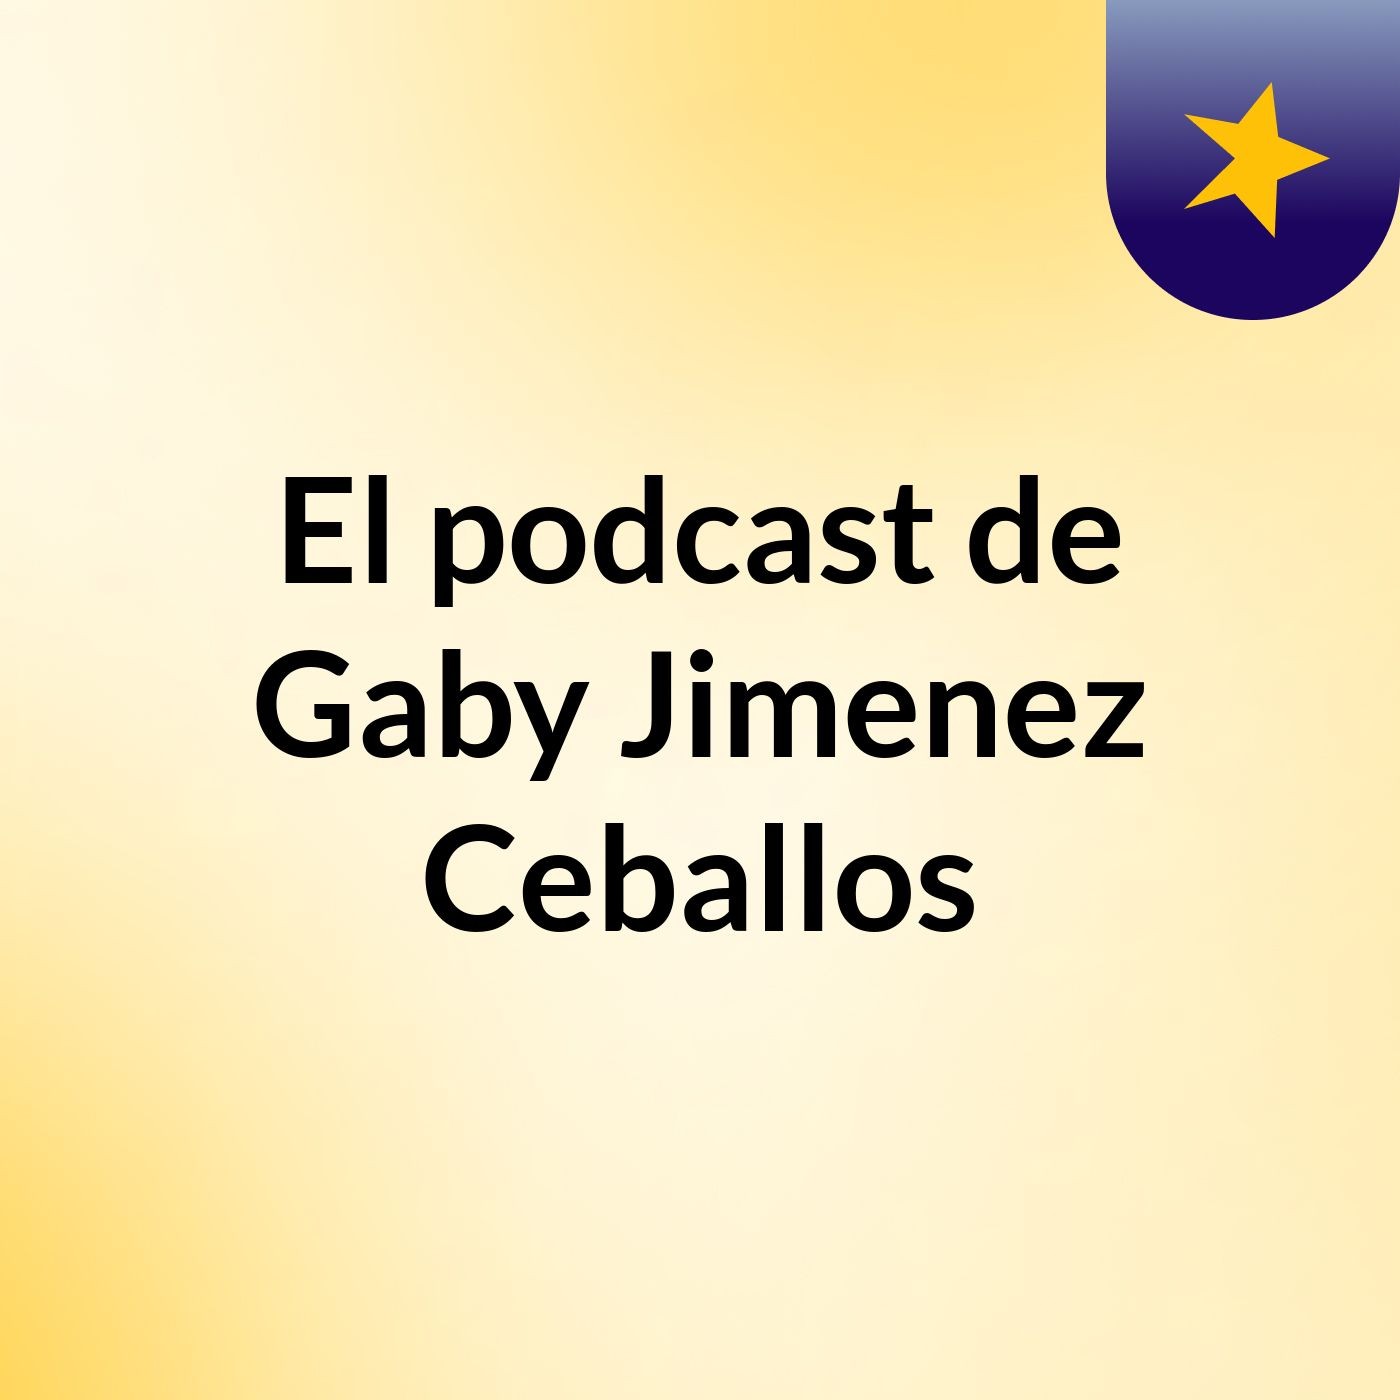 El podcast de Gaby Jimenez Ceballos